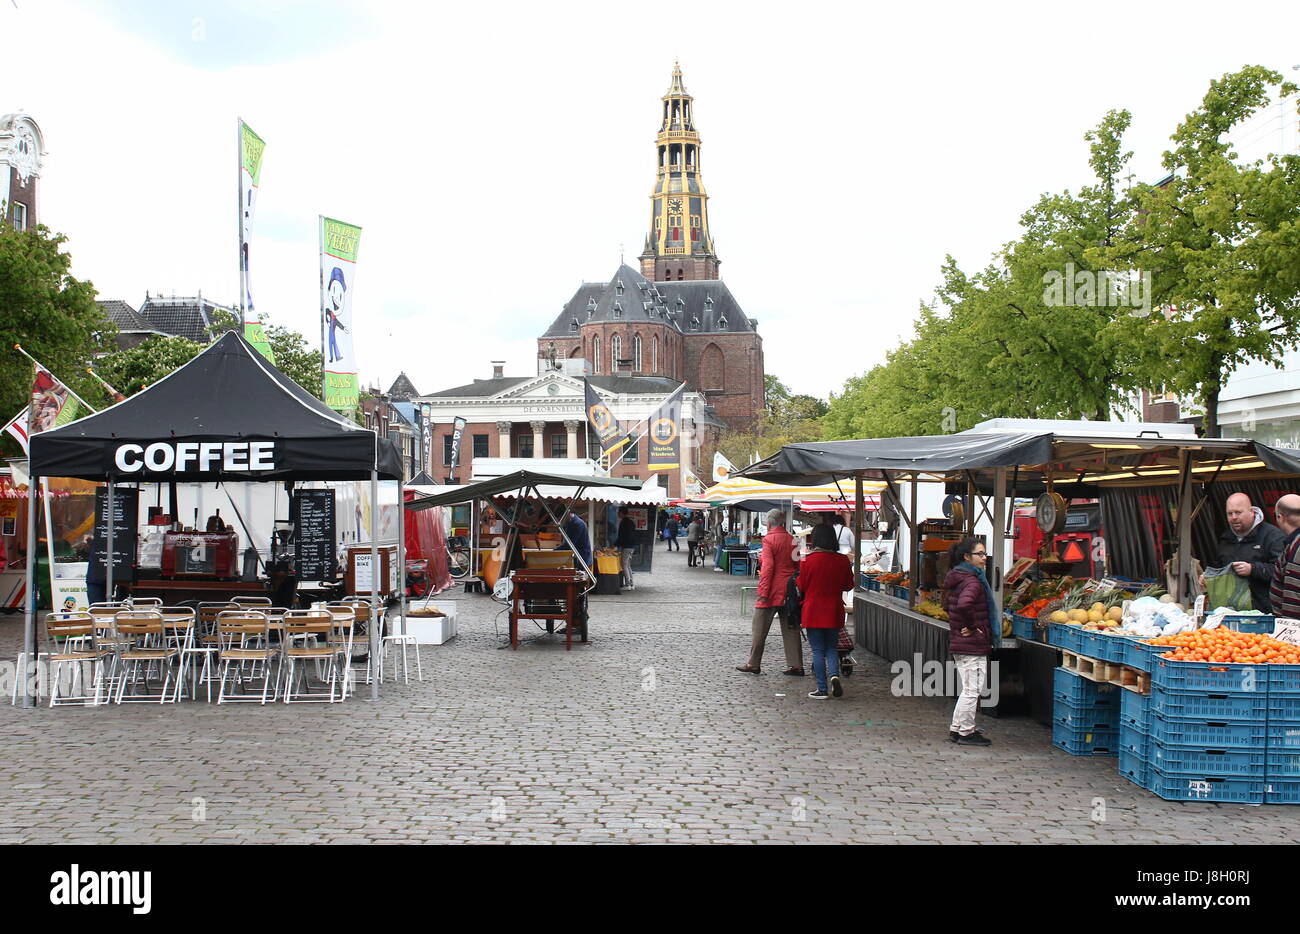 Jour de marché sur la grande place médiévale Vismarkt, ville de Groningen, Pays-Bas. En arrière-plan Korenbeurs & Der Aa Kerk (église) Aa Banque D'Images